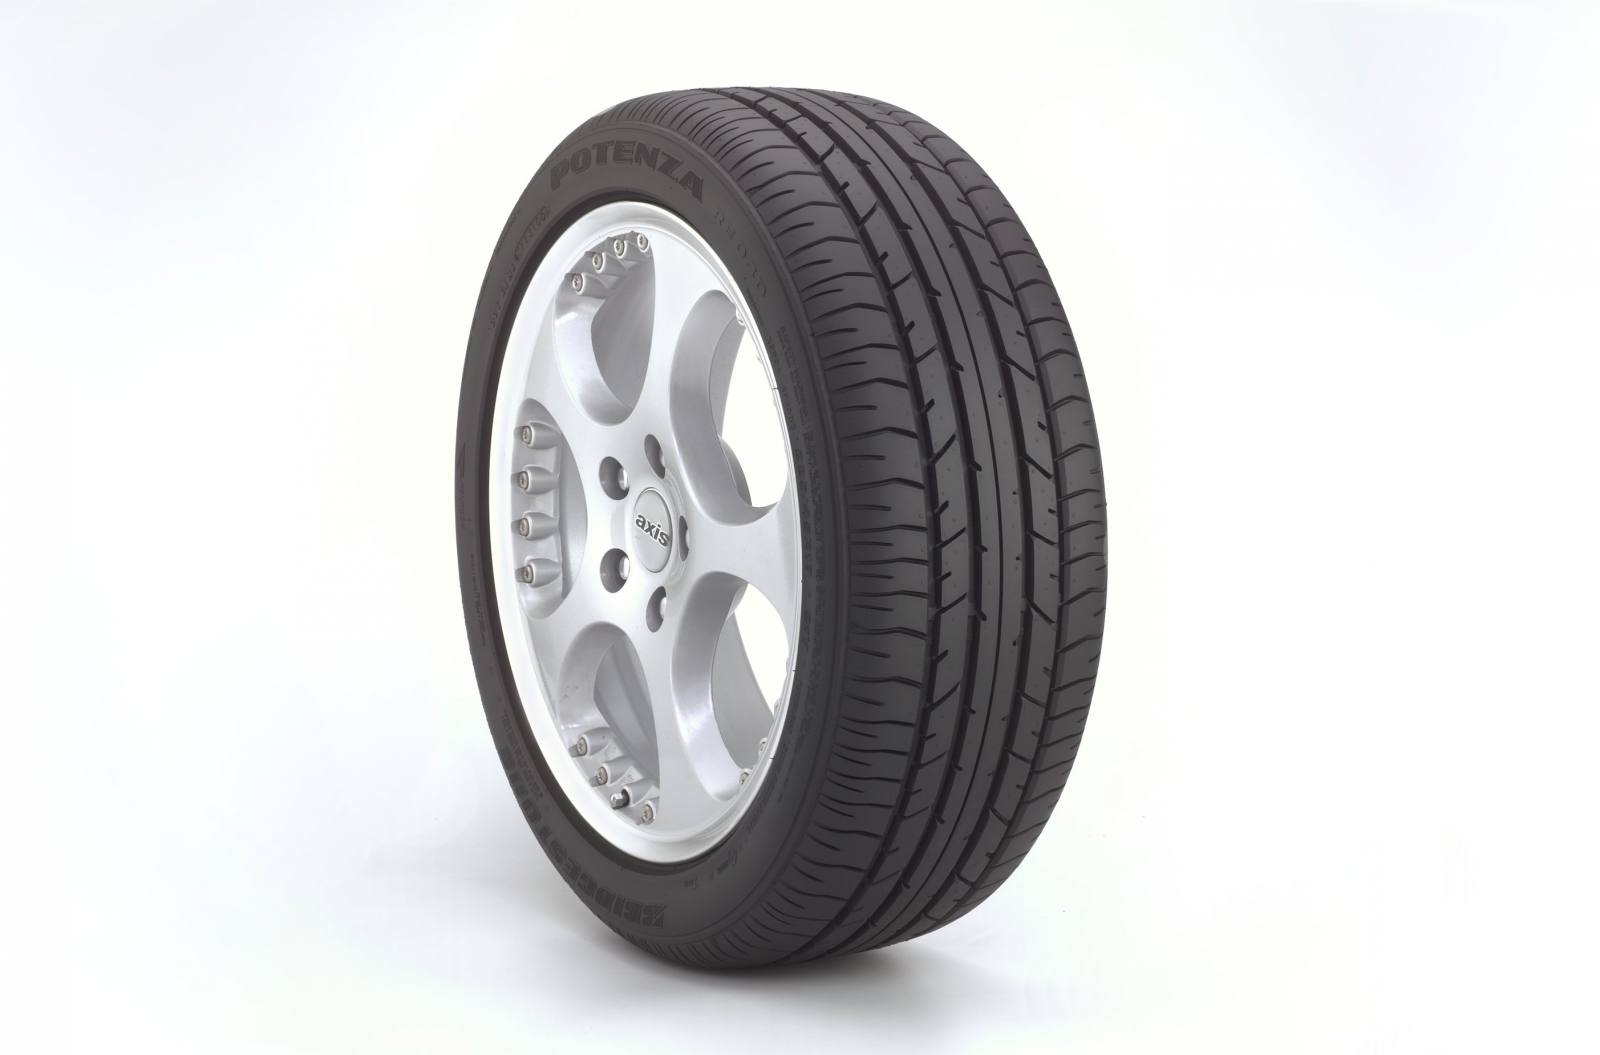 245/40/R18 Tires - Tires Catalog - TireFu